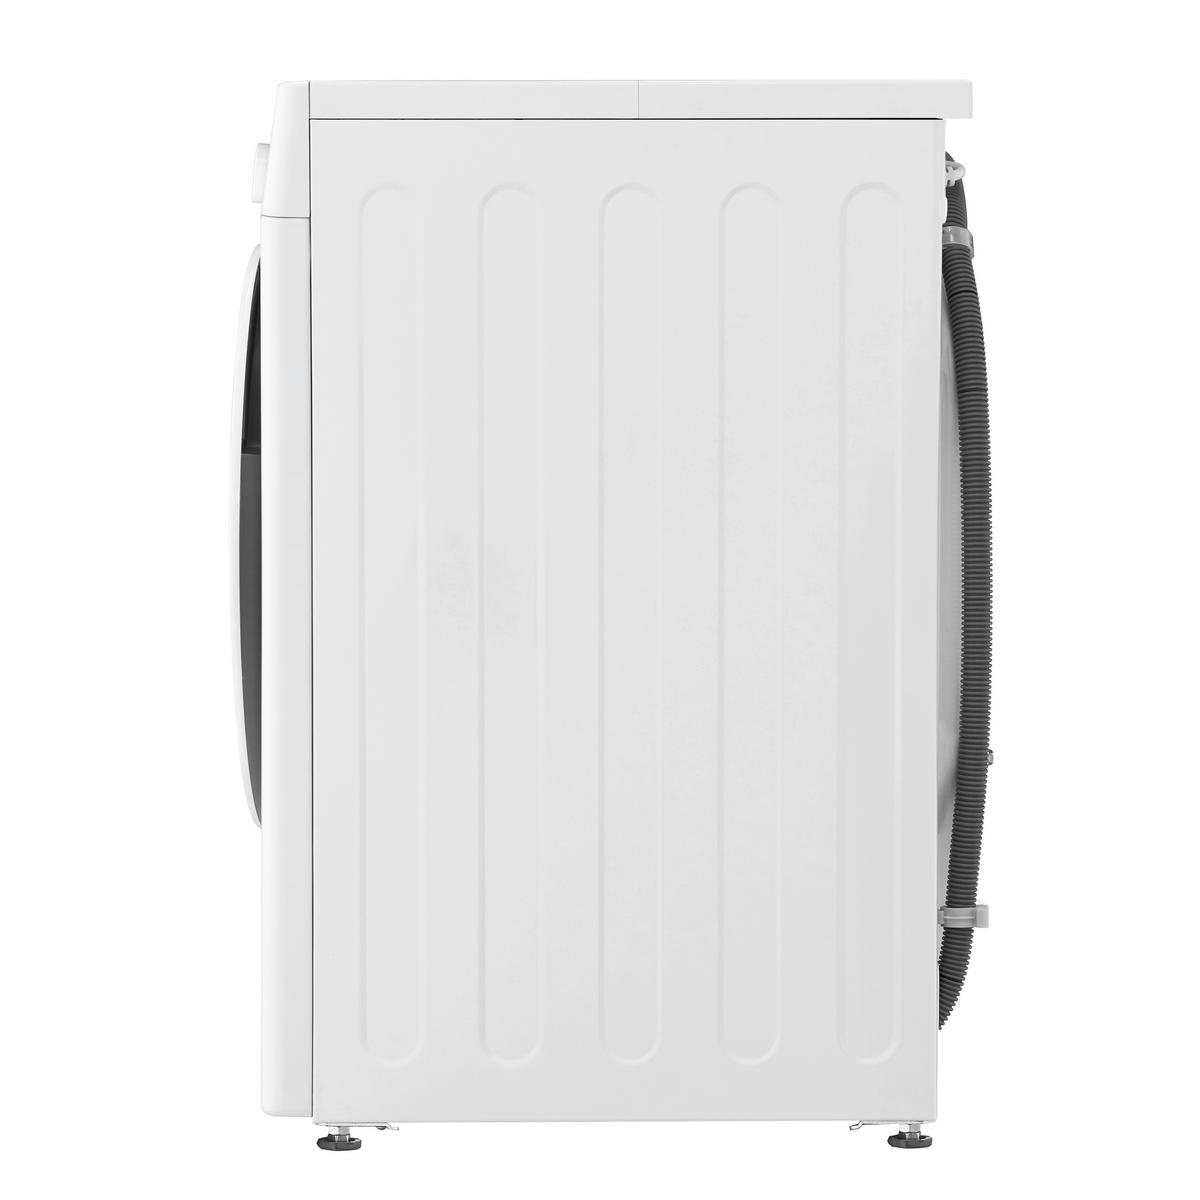 LG Waschvollautomat F4WR3193 weiß B/H/T: bei online kaufen ca. ▷ POCO cm 60x85x57